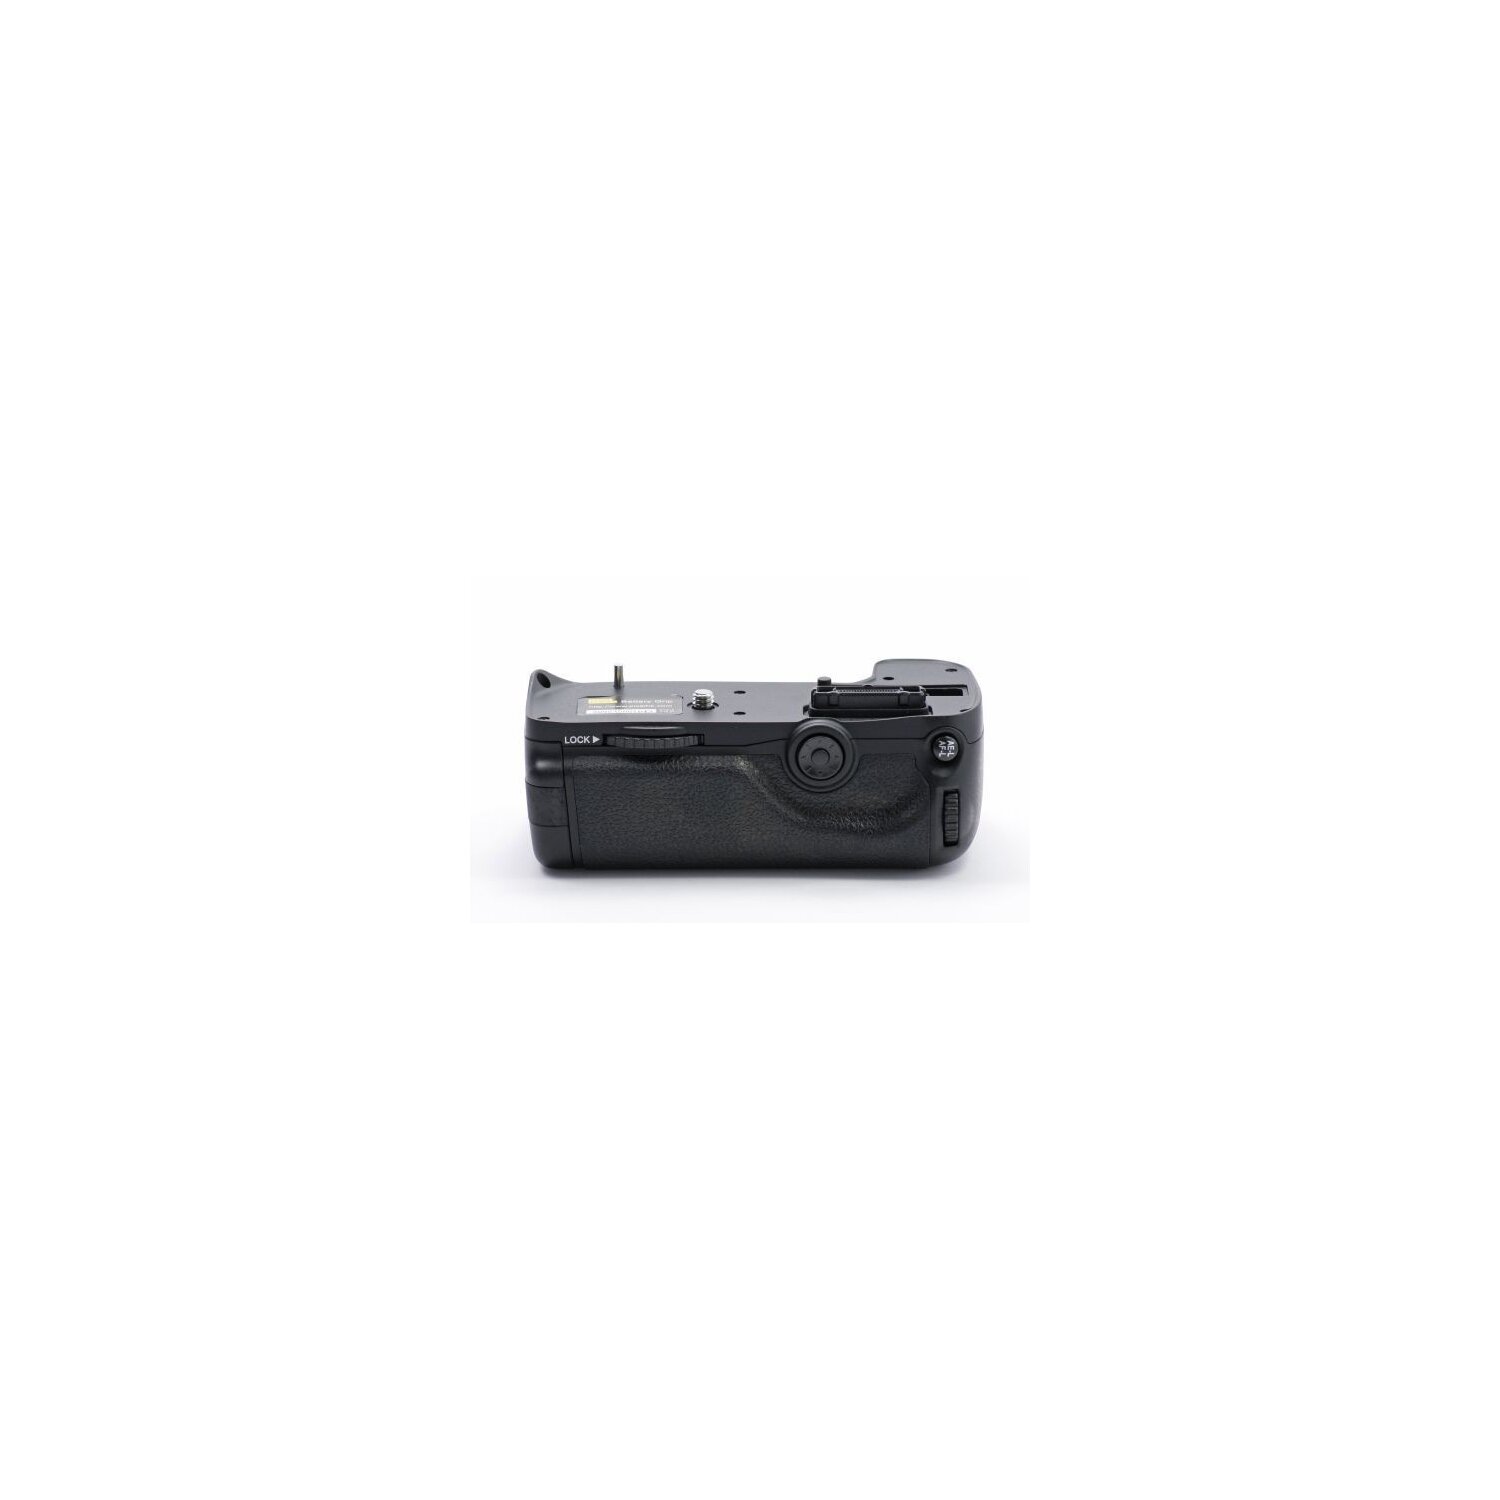 Qualitaets Profi Batteriegriff von Vertax fuer Nikon D7000 wie der MB-D11 - fuer 2x EN-EL15 oder 6 AA Batterien